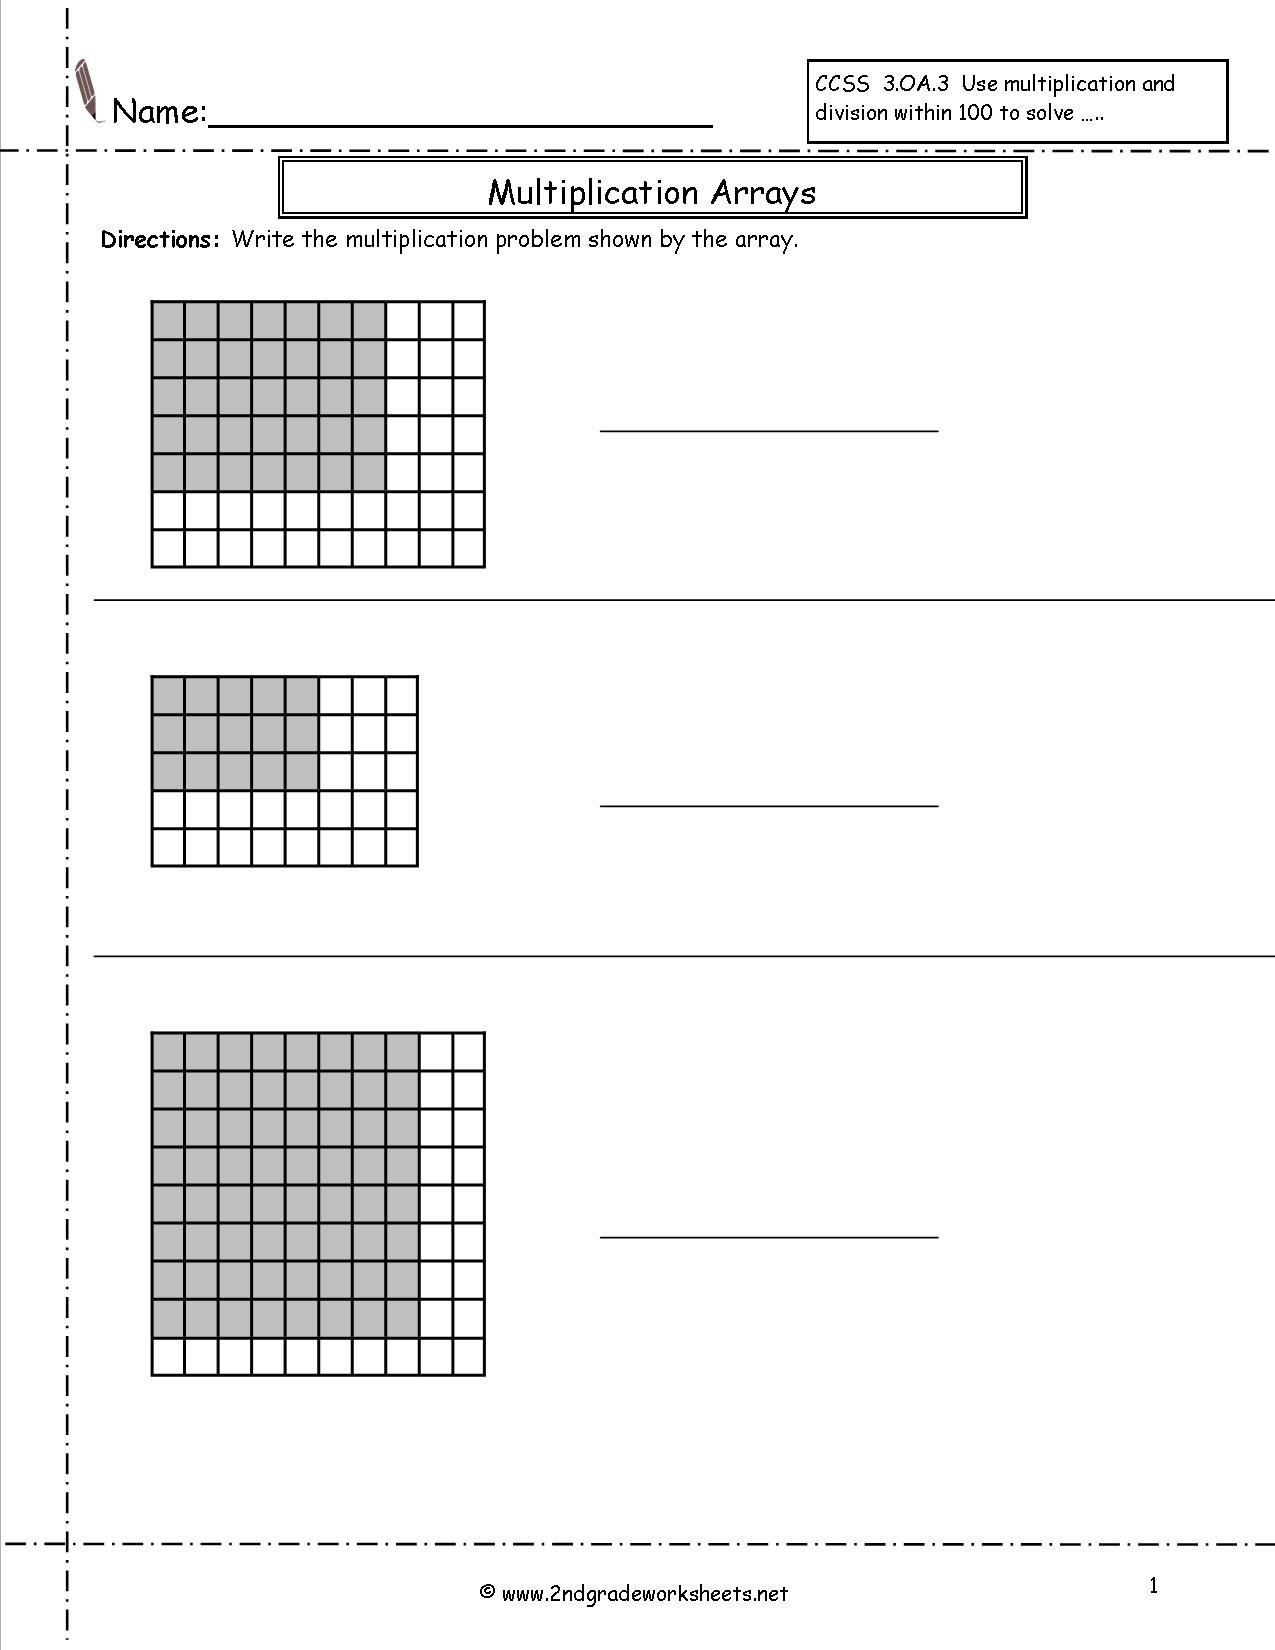 Multiplication Arrays Worksheets Inside Multiplication Arrays Worksheets 4Th Grade